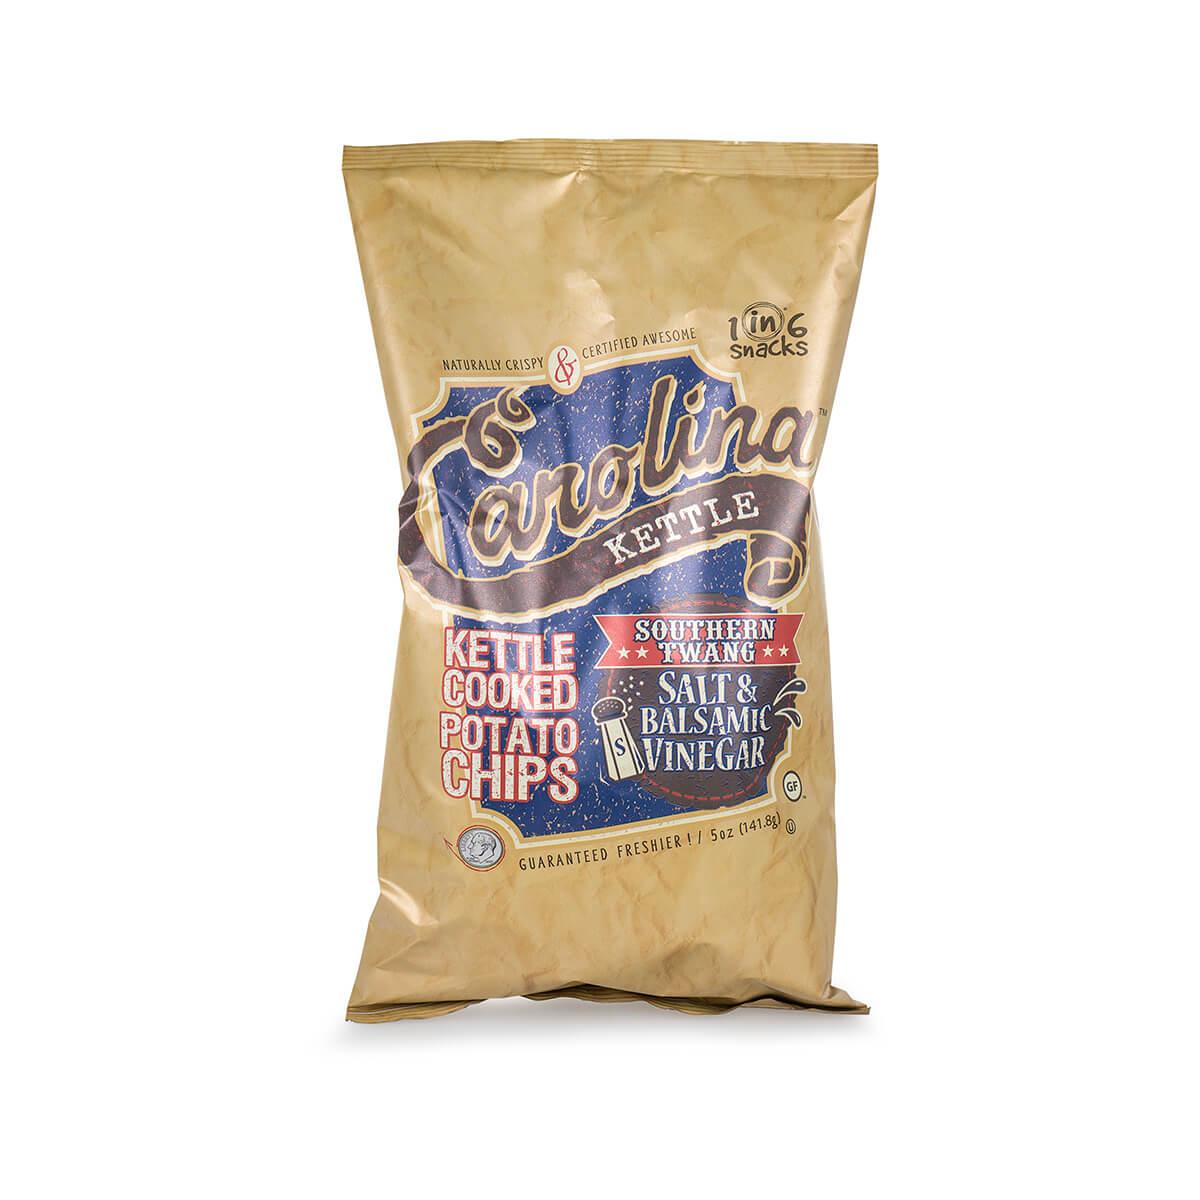  Southern Twang Salt & Balsamic Vinegar Potato Chips - 5 Ounce